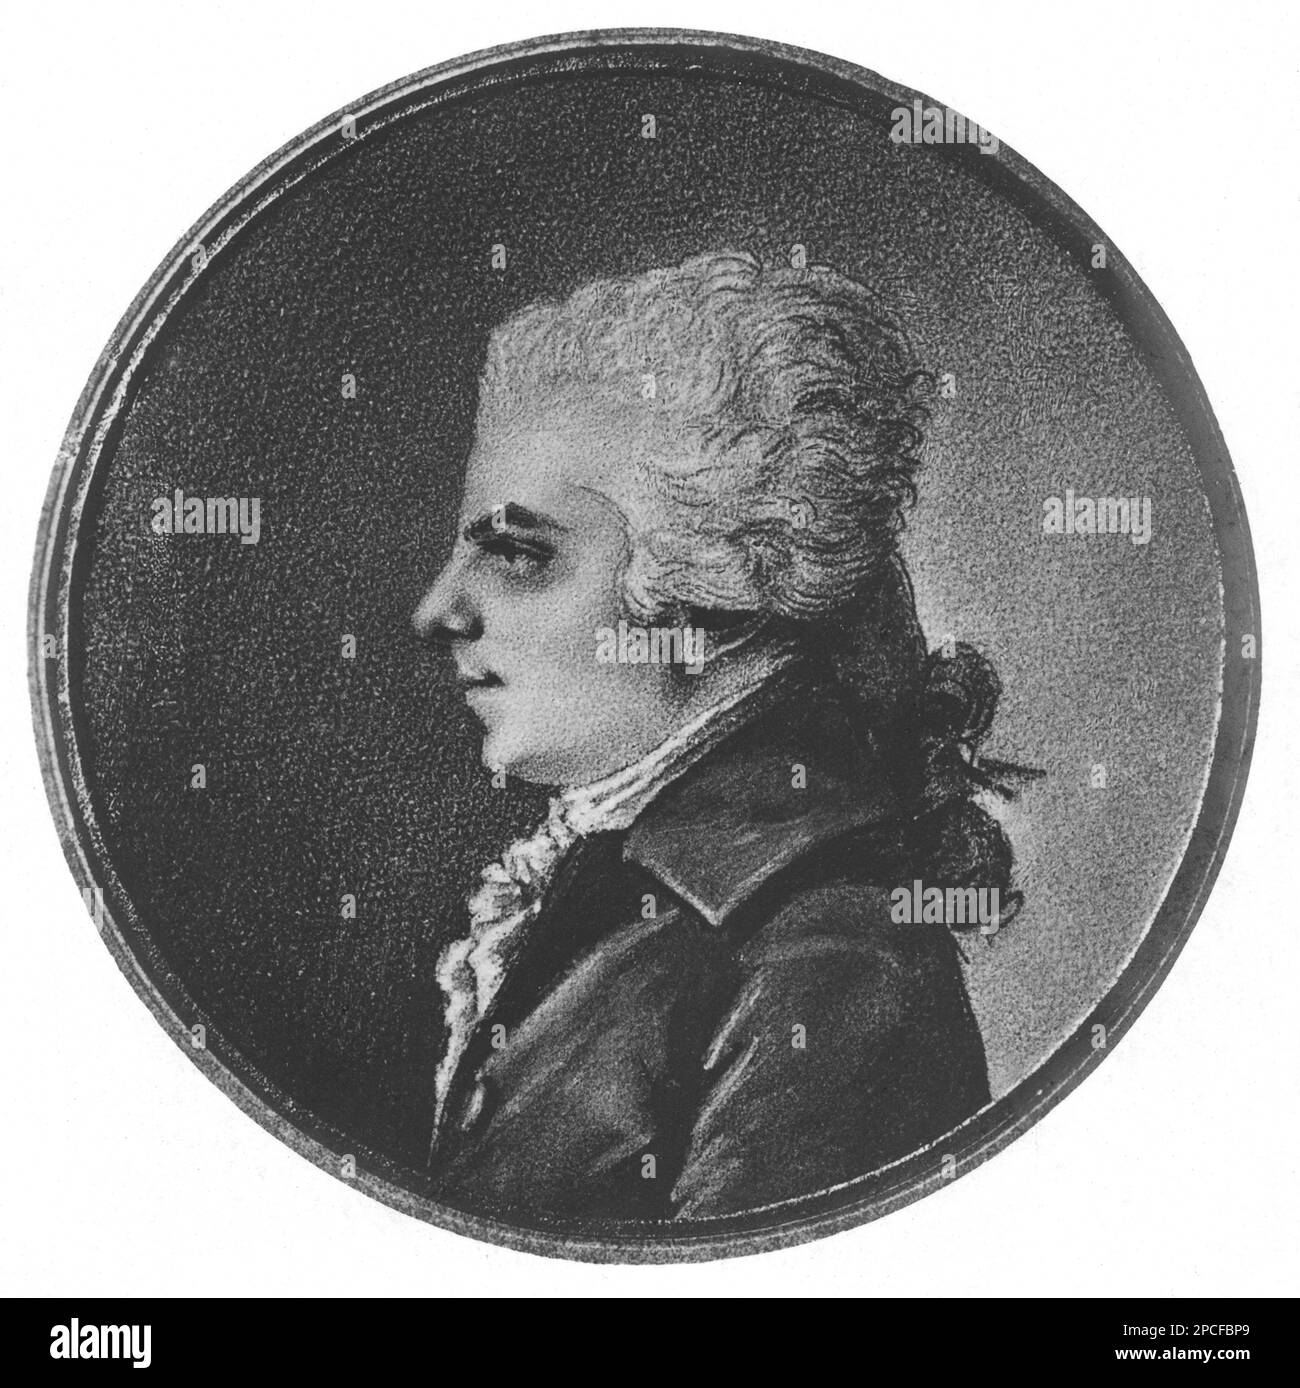 Der gefeierte österreichische Musikkomponist WOLFANG AMADEUS MOZART ( 1756 - 1791 ) - COMPOSITORE - OPERA LIRICA - CLASSICA - KLASSISCH - PORTRÄT - RITRATTO - MUSICISTA - MUSICA - profilo - Profil - Perücke - Parrucca -- - ARCHIVIO GBB Stockfoto